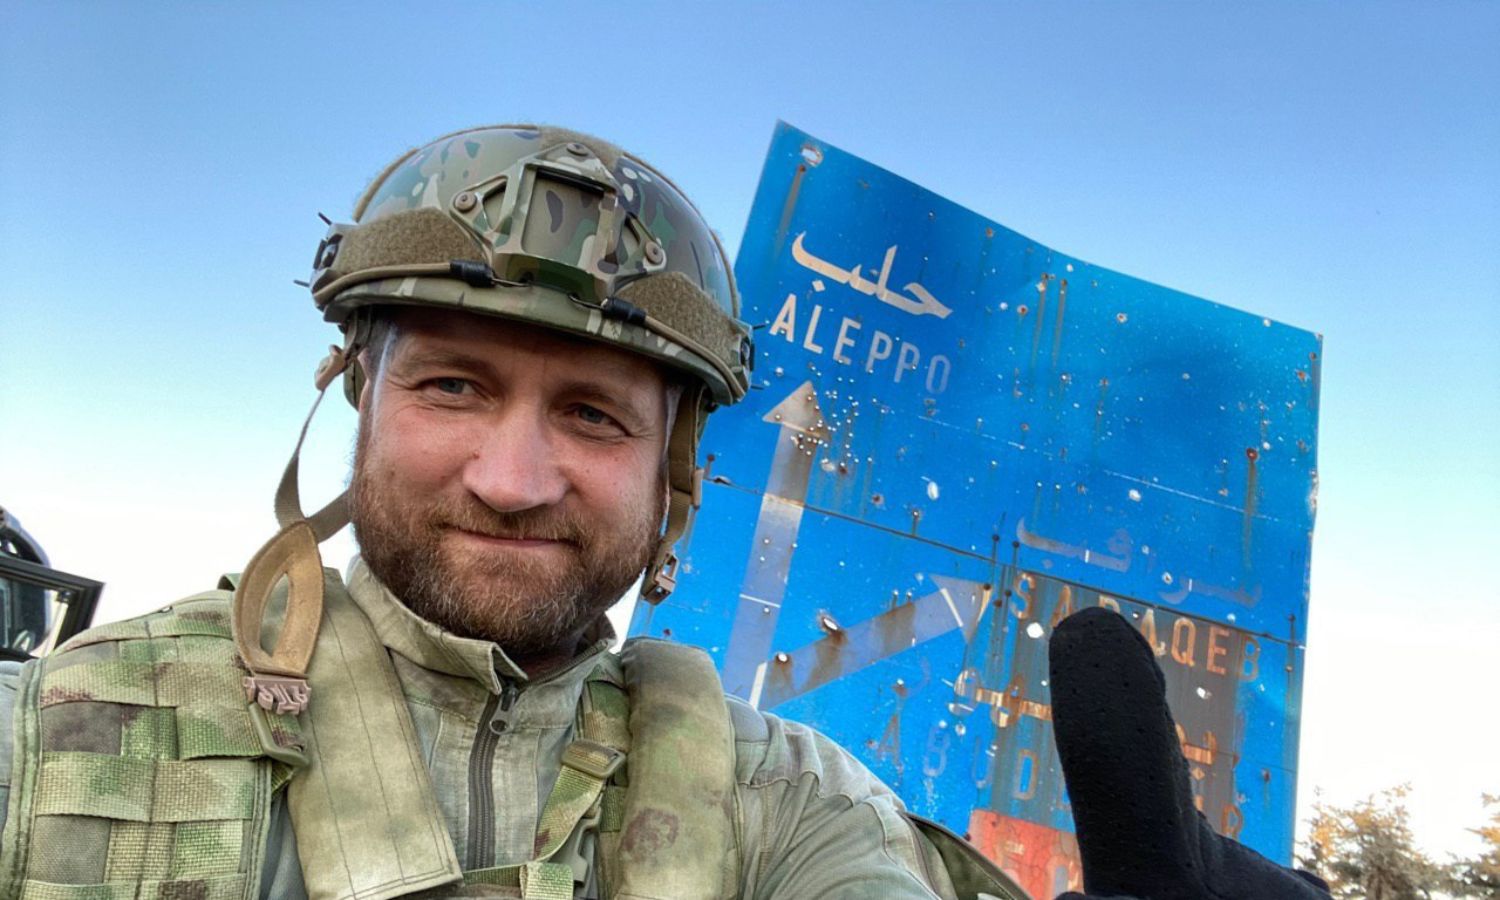 المقاتل والمراسل الحربي الروسي أوليغ بلوخين قرب لافتة كُتب عليها حلب- 14 من آب 2020 (حساب المراسل في تويتر)